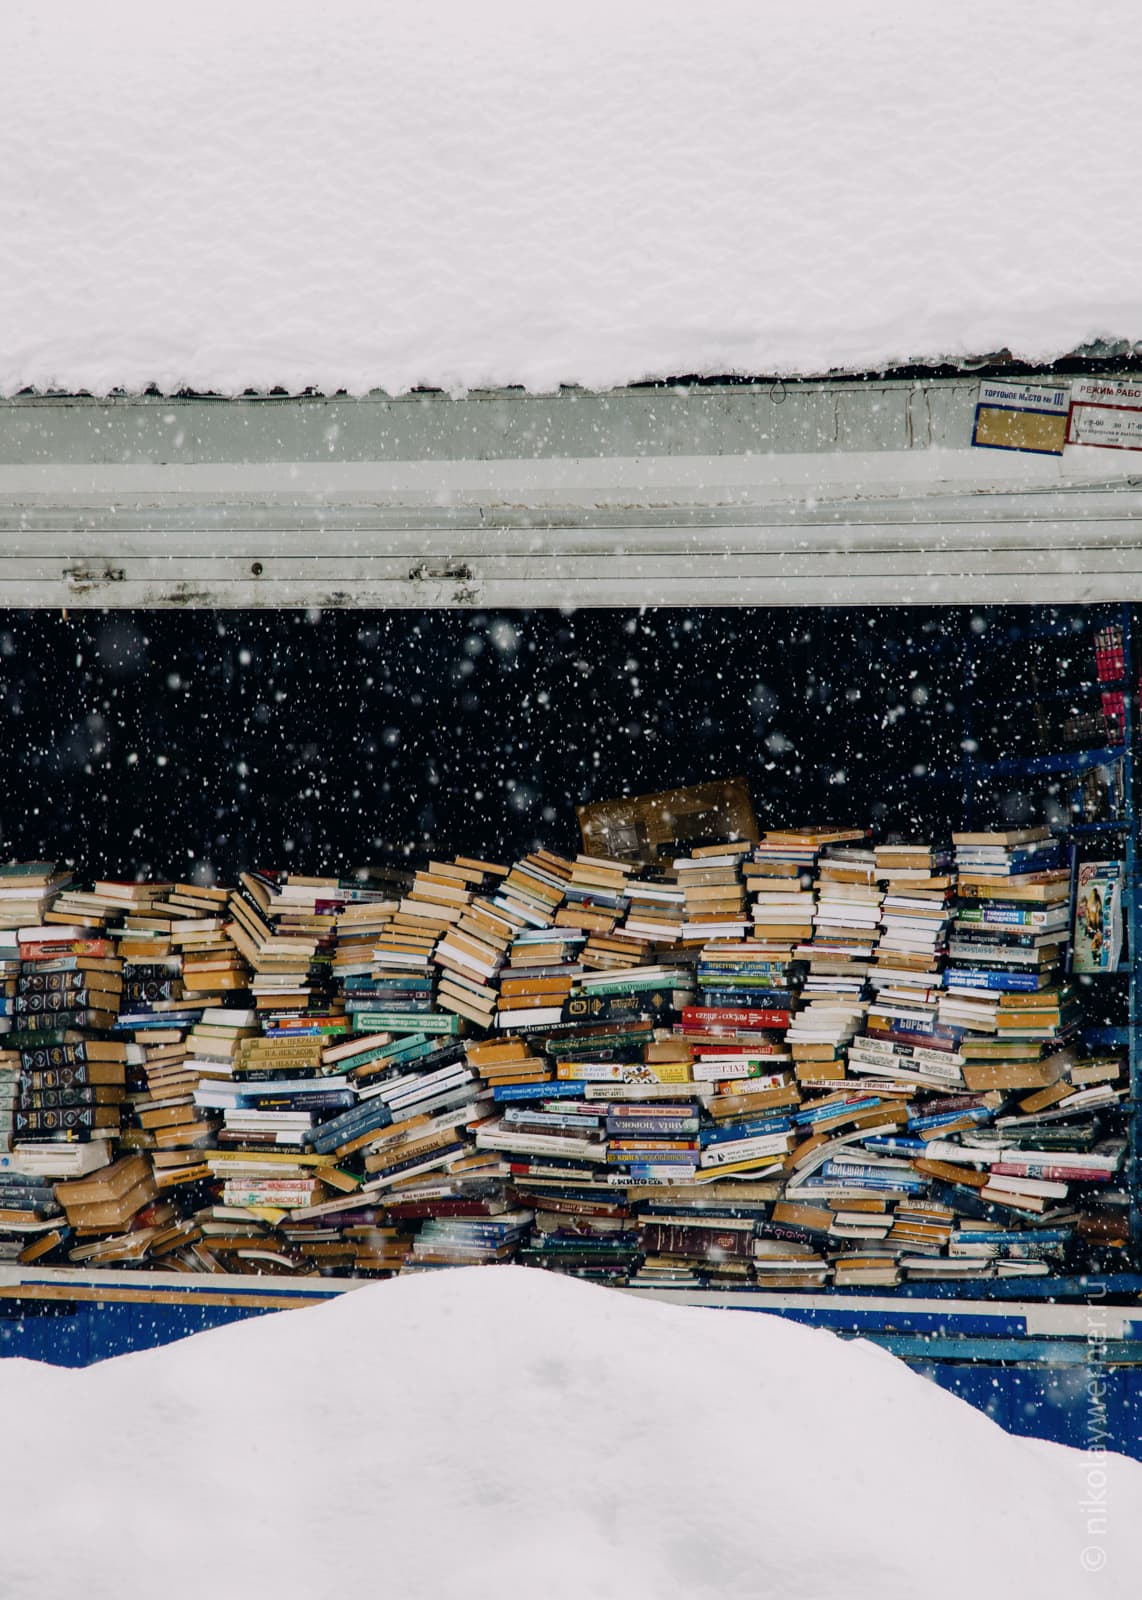 Стена снега на переднем плане, за ней прилавок, до верха забитый книгами, сверху снова снег, на крыше ларьк